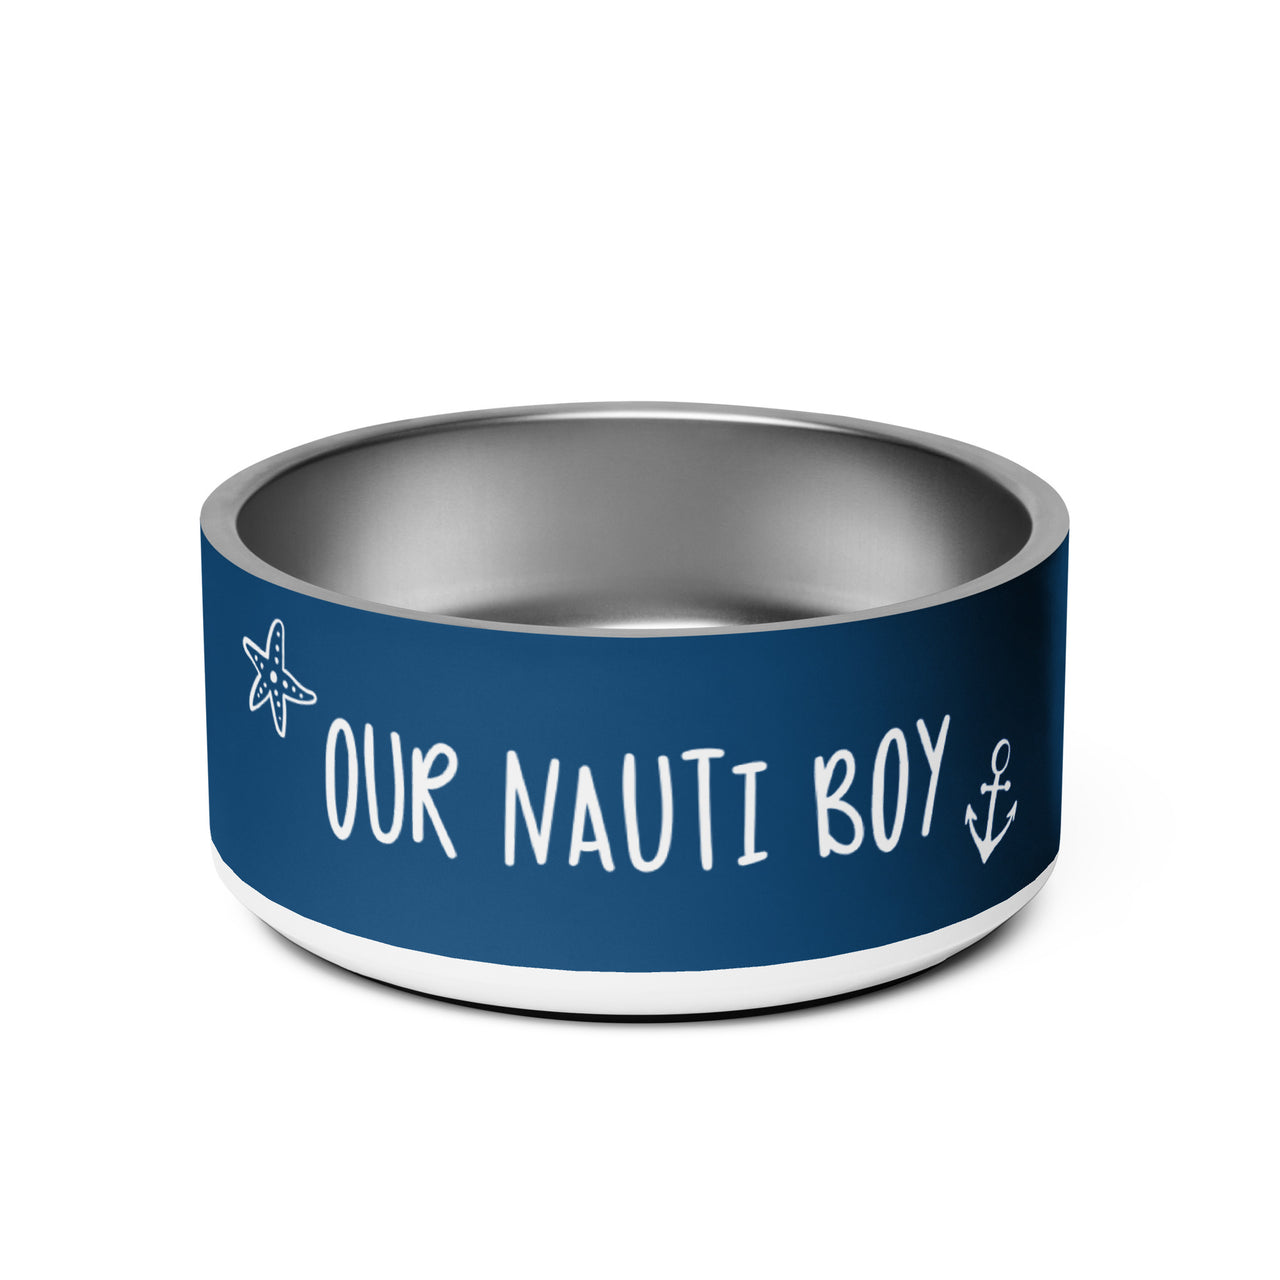 Nauti Boy Coastal Pet Bowl, 2 Sizes  New England Trading Co 32oz  